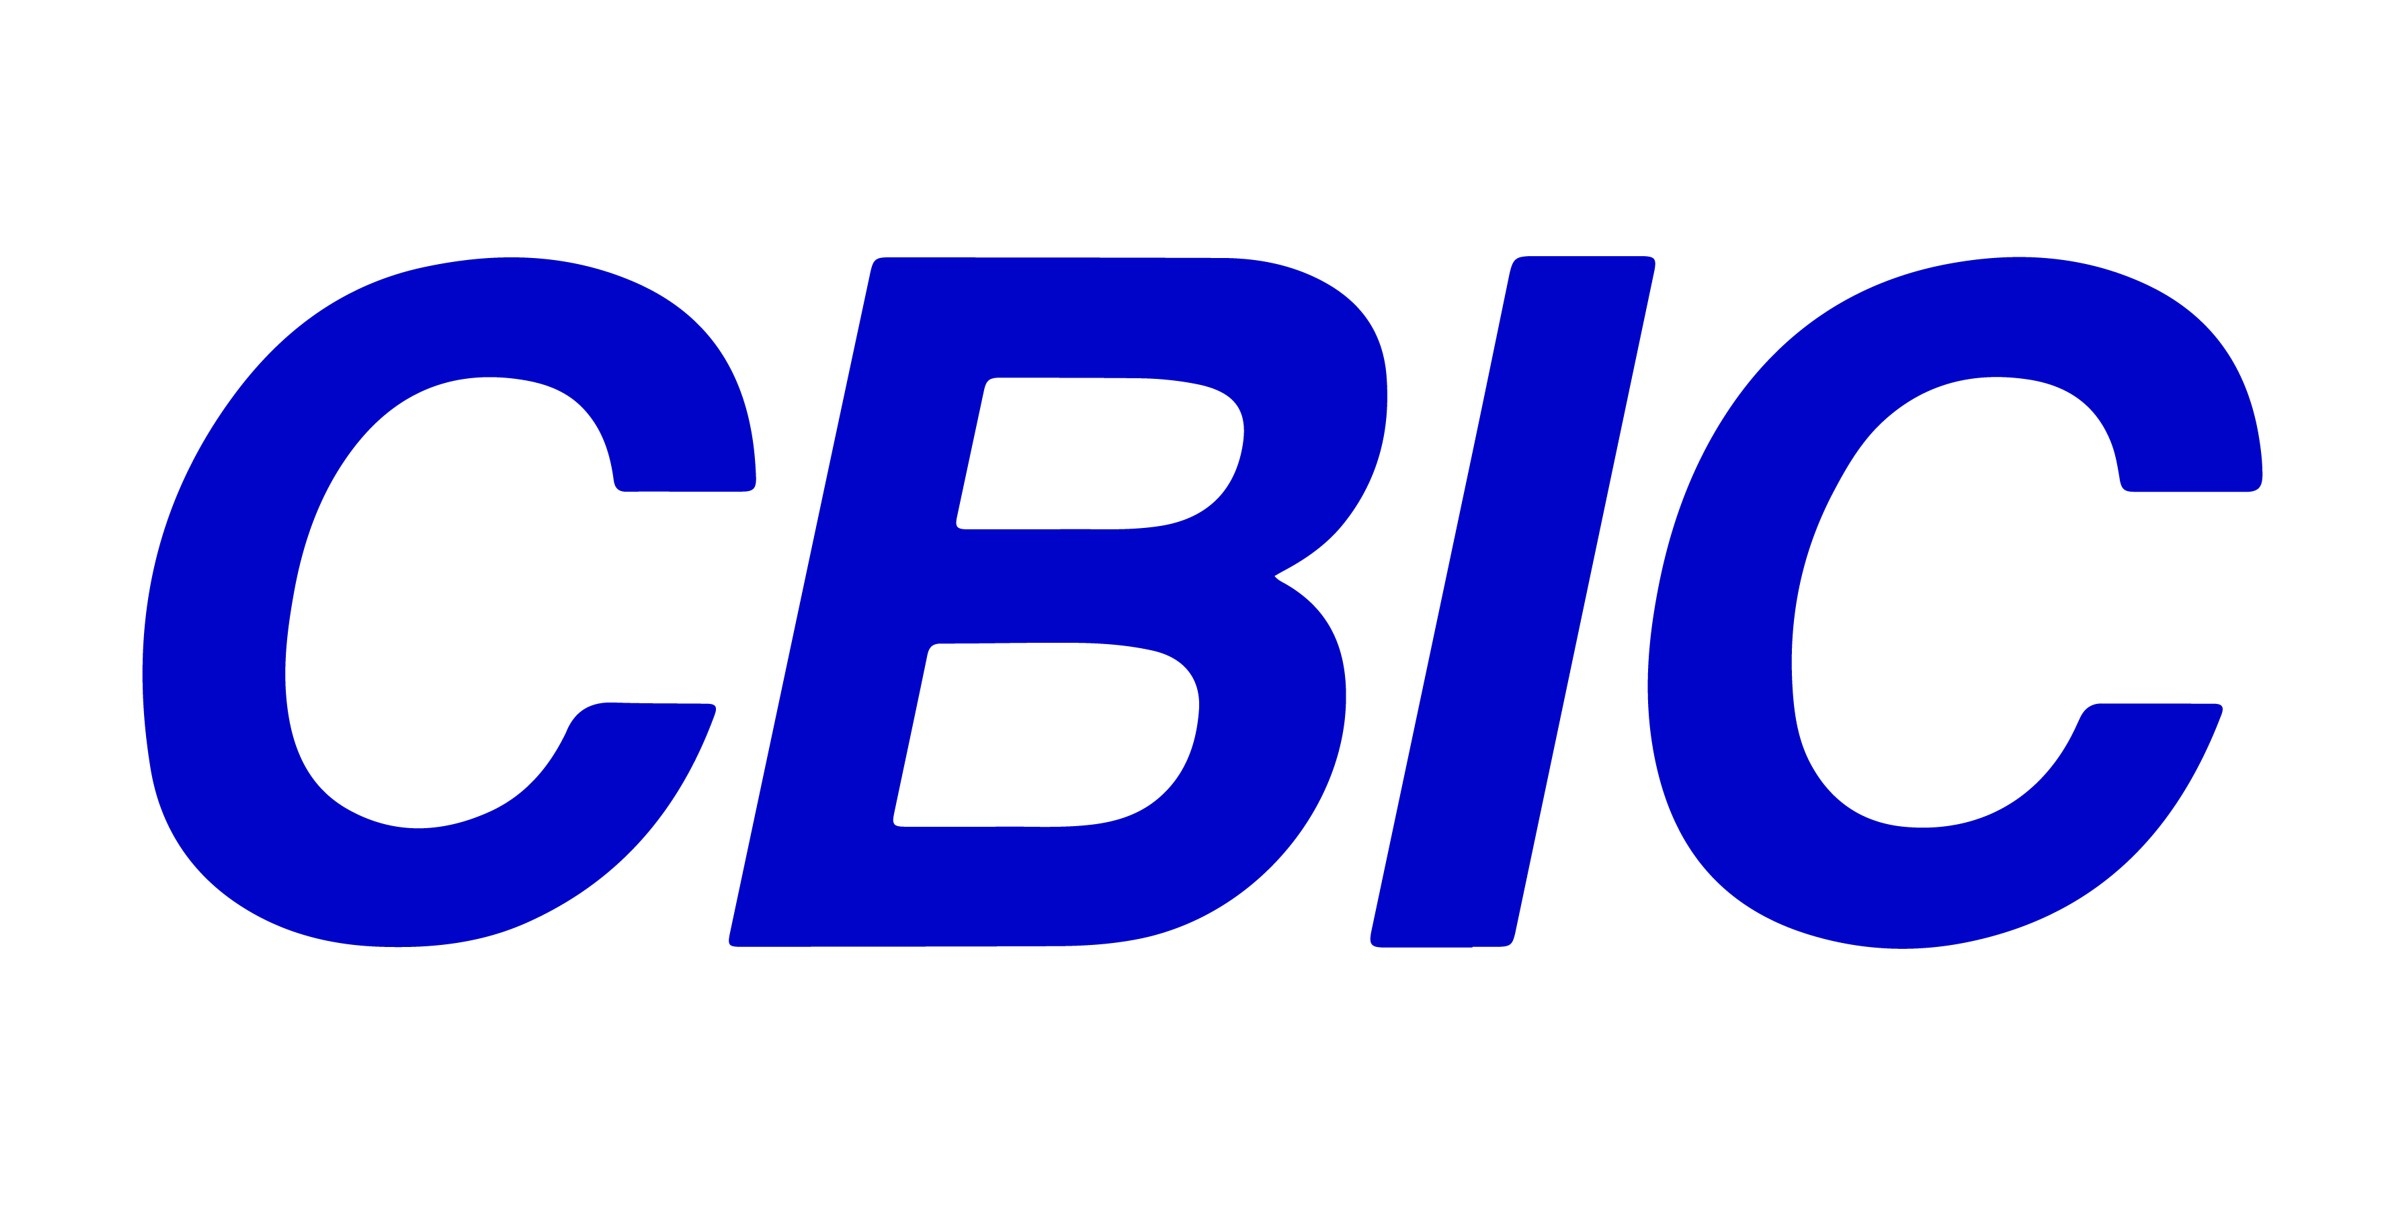 CBIC comemora 69 do Sinduscon-BA em prol das empresas da